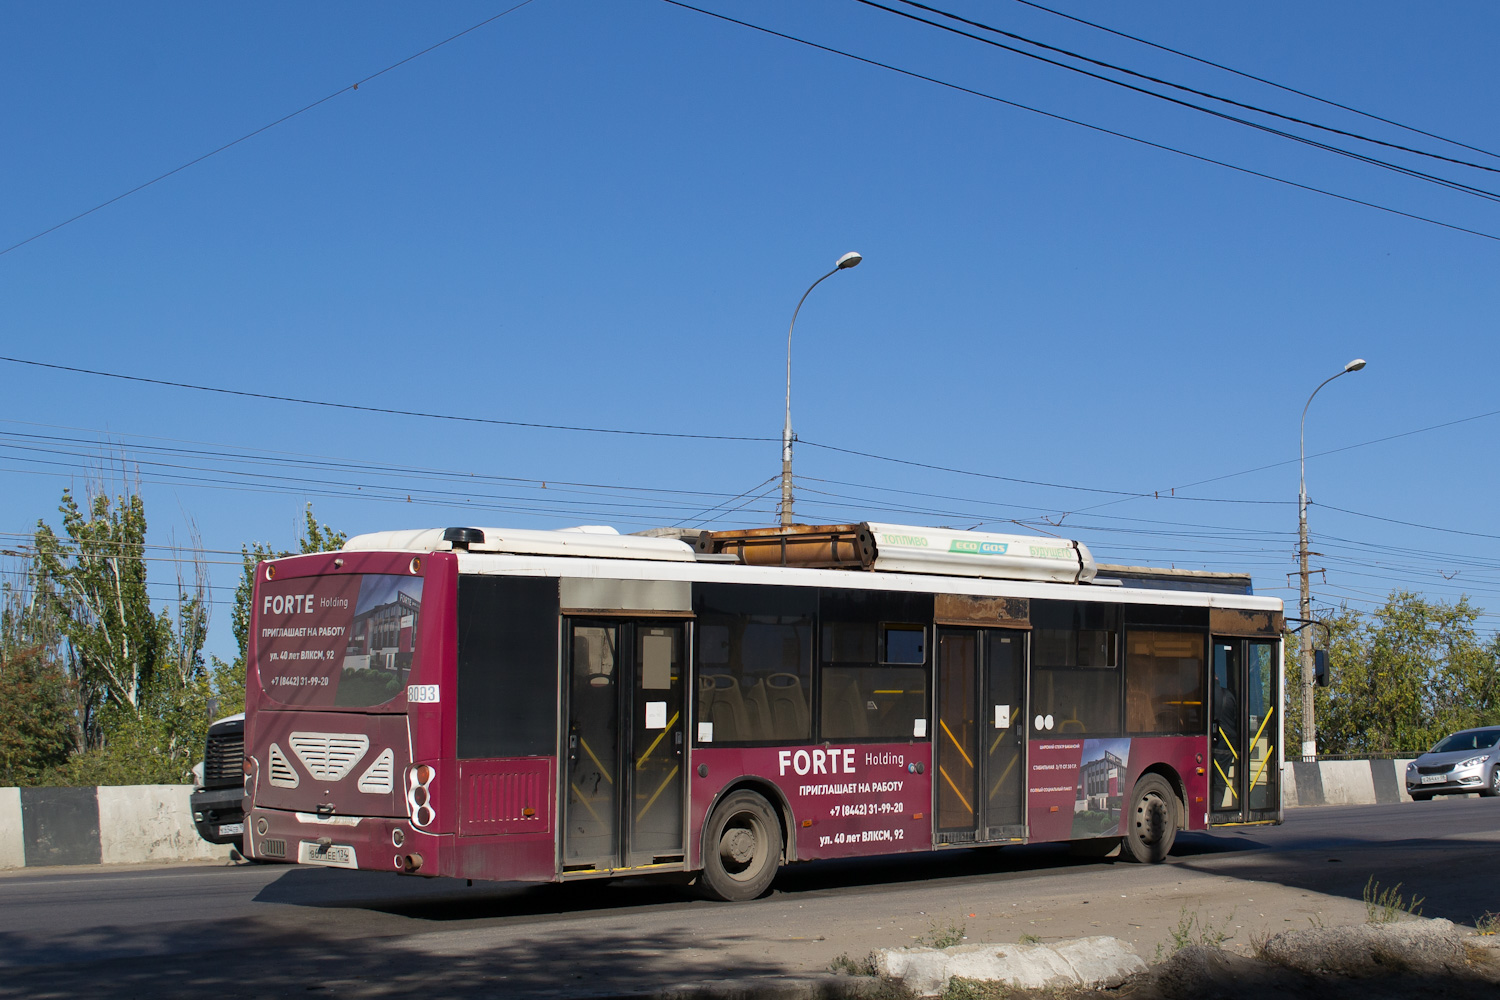 Волгоградская область, Volgabus-5270.G2 (CNG) № 8093